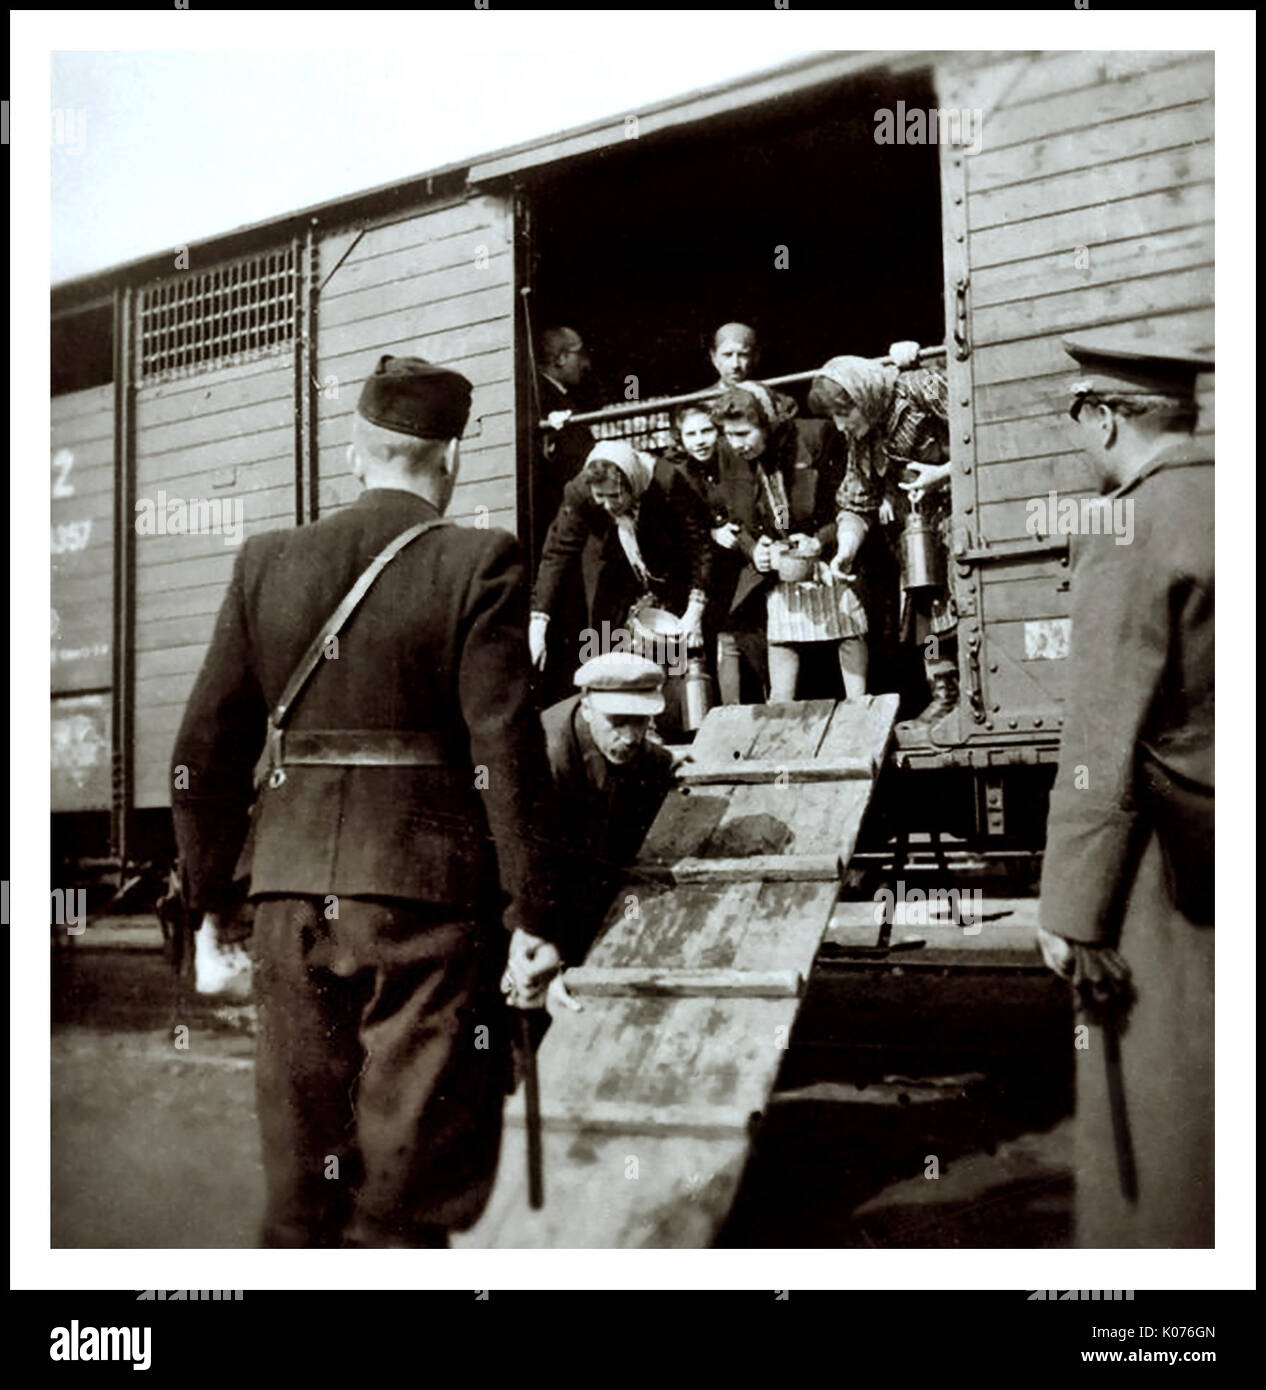 LAS mujeres y los niños judíos DE AUSCHWITZ llegan por ferrocarril en  carruajes ferroviarios sin calefacción a Auschwitz-Birkenau, un campo de  concentración y exterminio nazi alemán de WW2. Los niños judíos constituyen